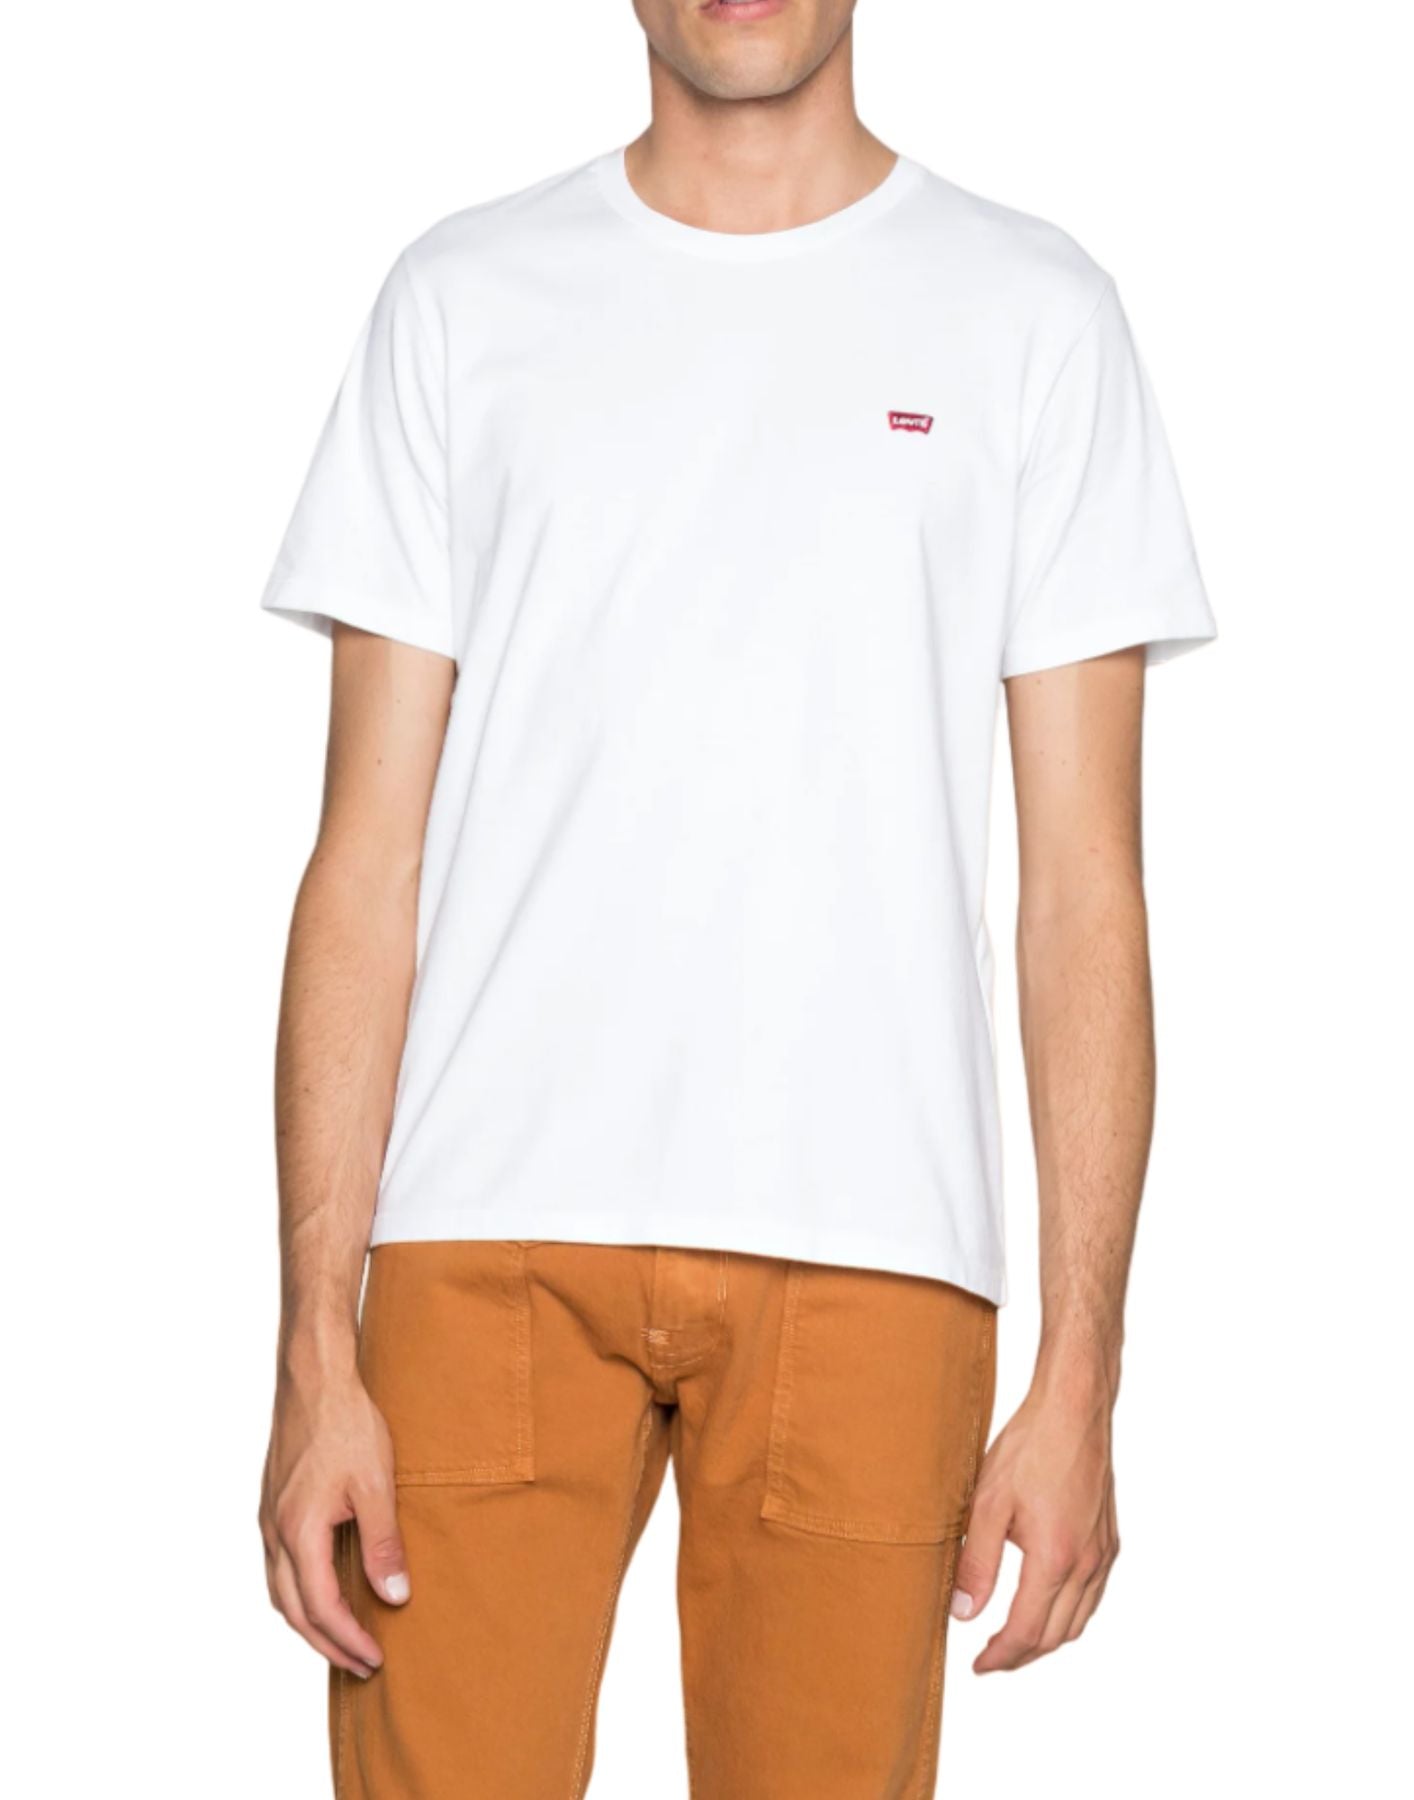 T-Shirt für Männer 56605 White + Levi's